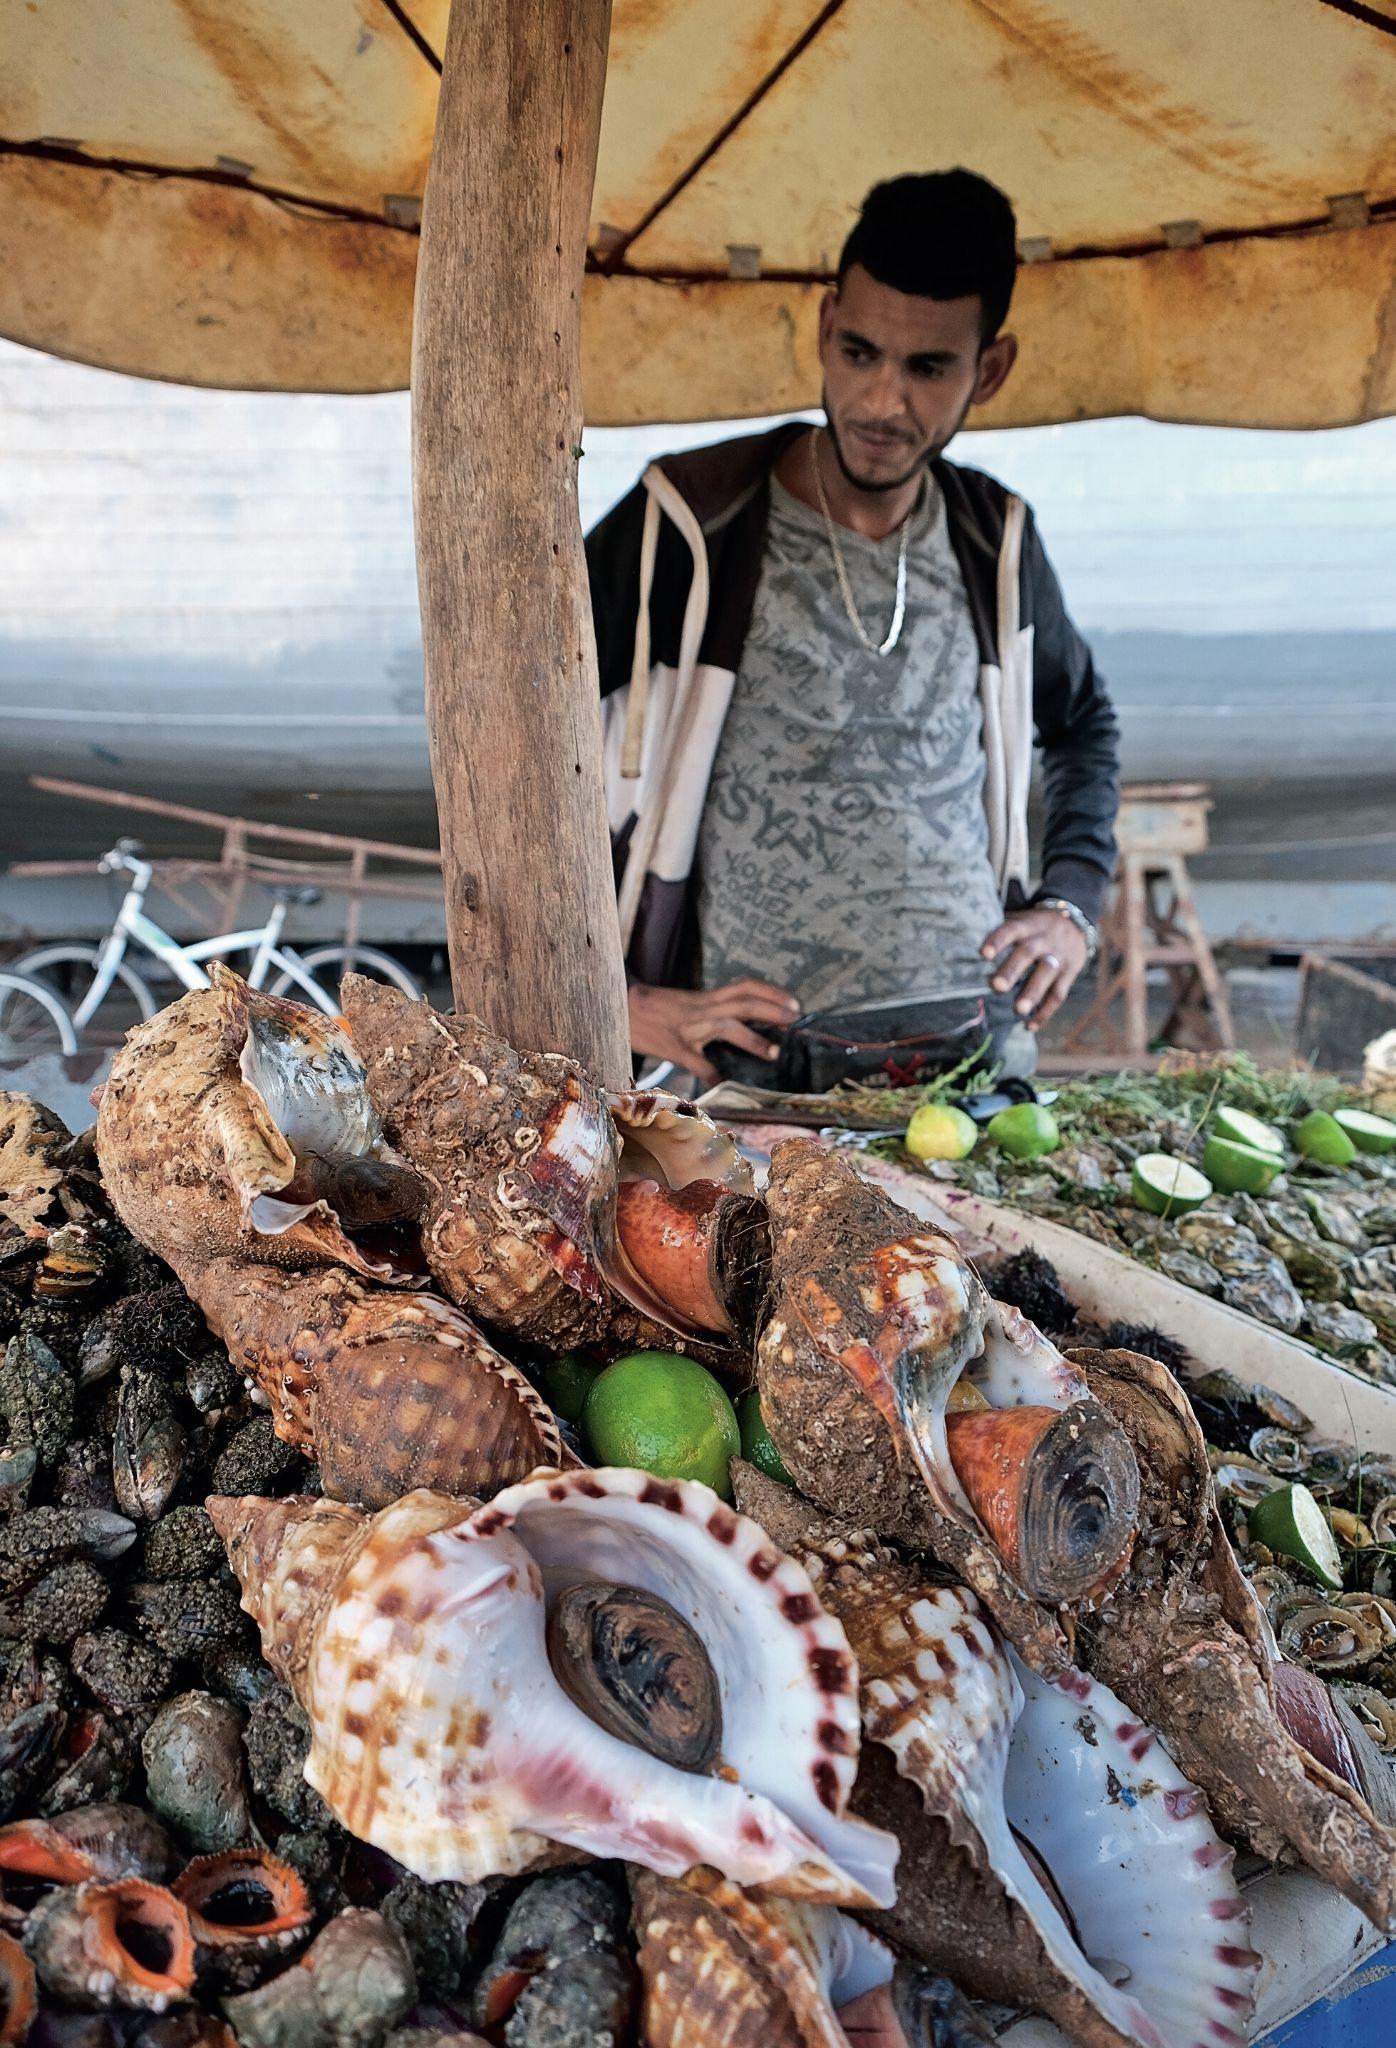  W porcie w Essaouirze można kupić to, co akurat się udało złowić miejscowym rybakom – od ślimaków, przez popularne tu sardynki, po małe rekiny. (Fot. Anna Janowska)